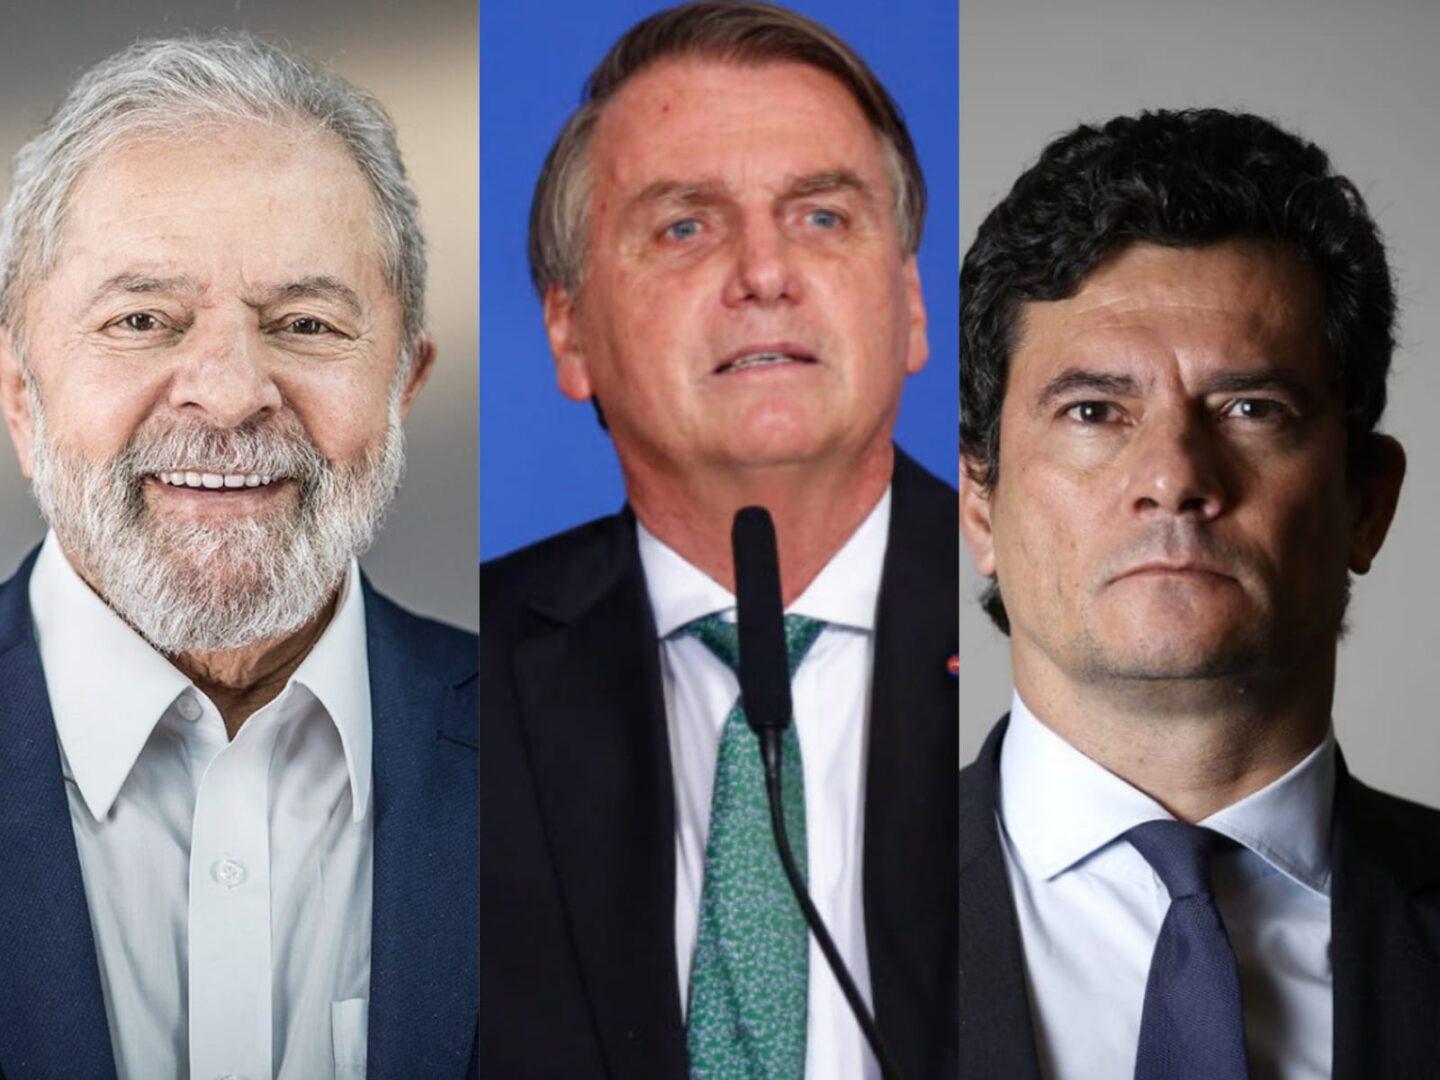 Eleições 2022: Lula tem 40%, Bolsonaro 27,8% e Moro 8,1%, mostra Serpes/Acieg